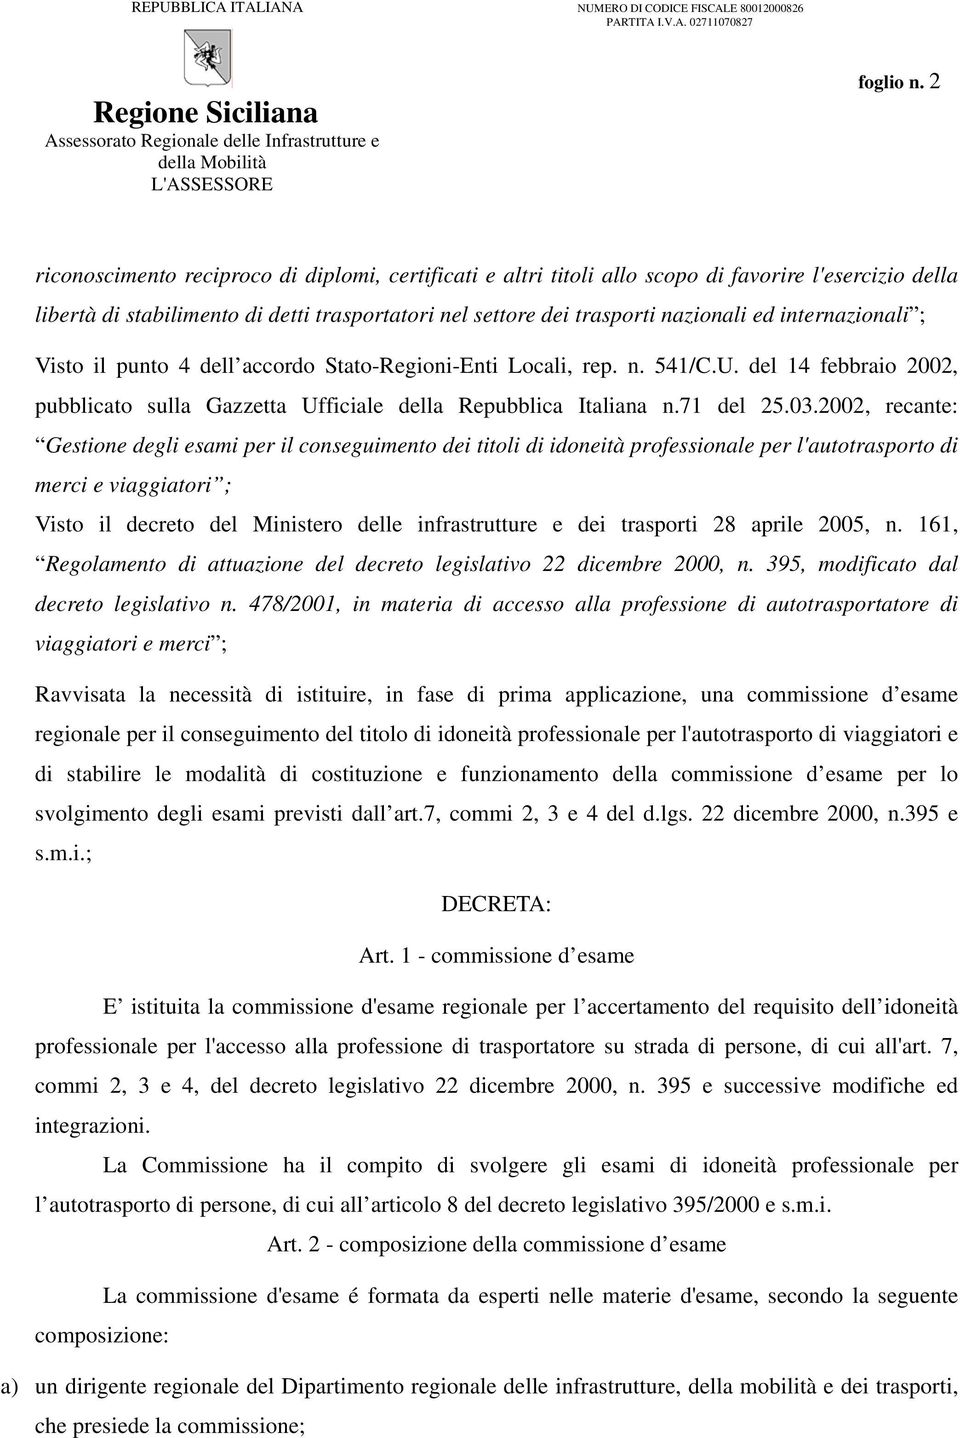 internazionali ; Visto il punto 4 dell accordo Stato-Regioni-Enti Locali, rep. n. 541/C.U. del 14 febbraio 2002, pubblicato sulla Gazzetta Ufficiale della Repubblica Italiana n.71 del 25.03.